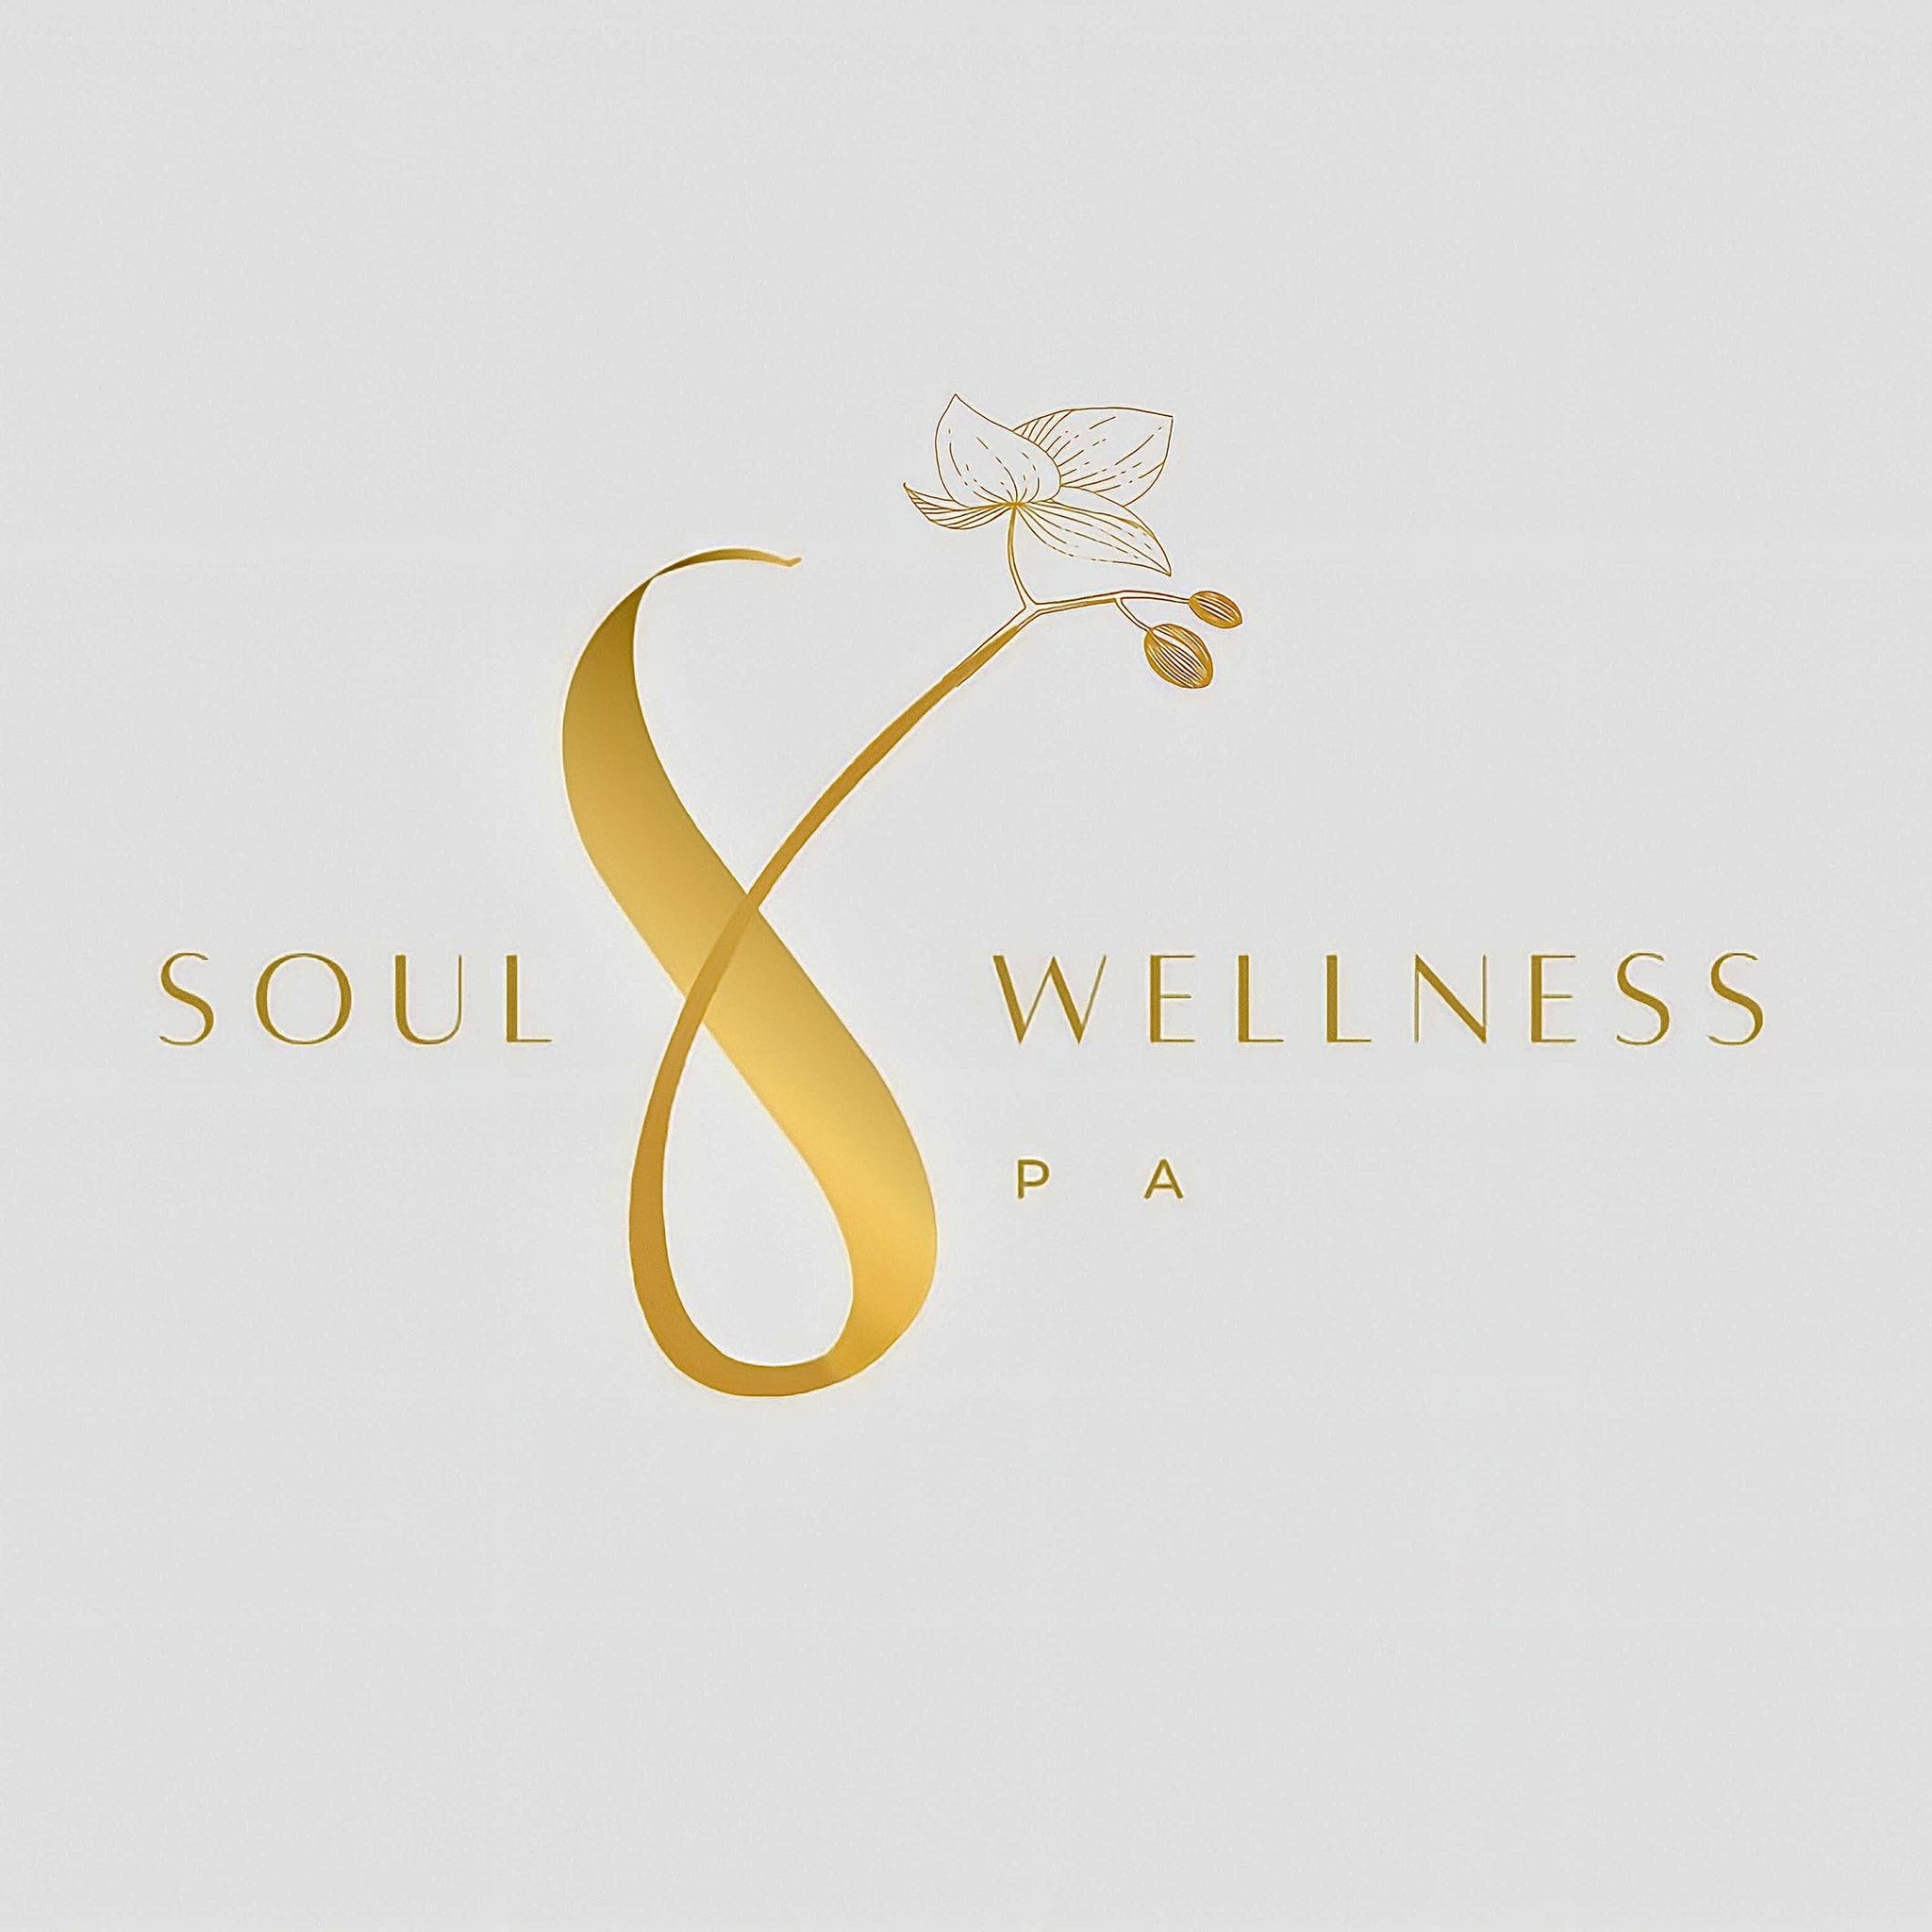 Soul Wellness Spa - JBR